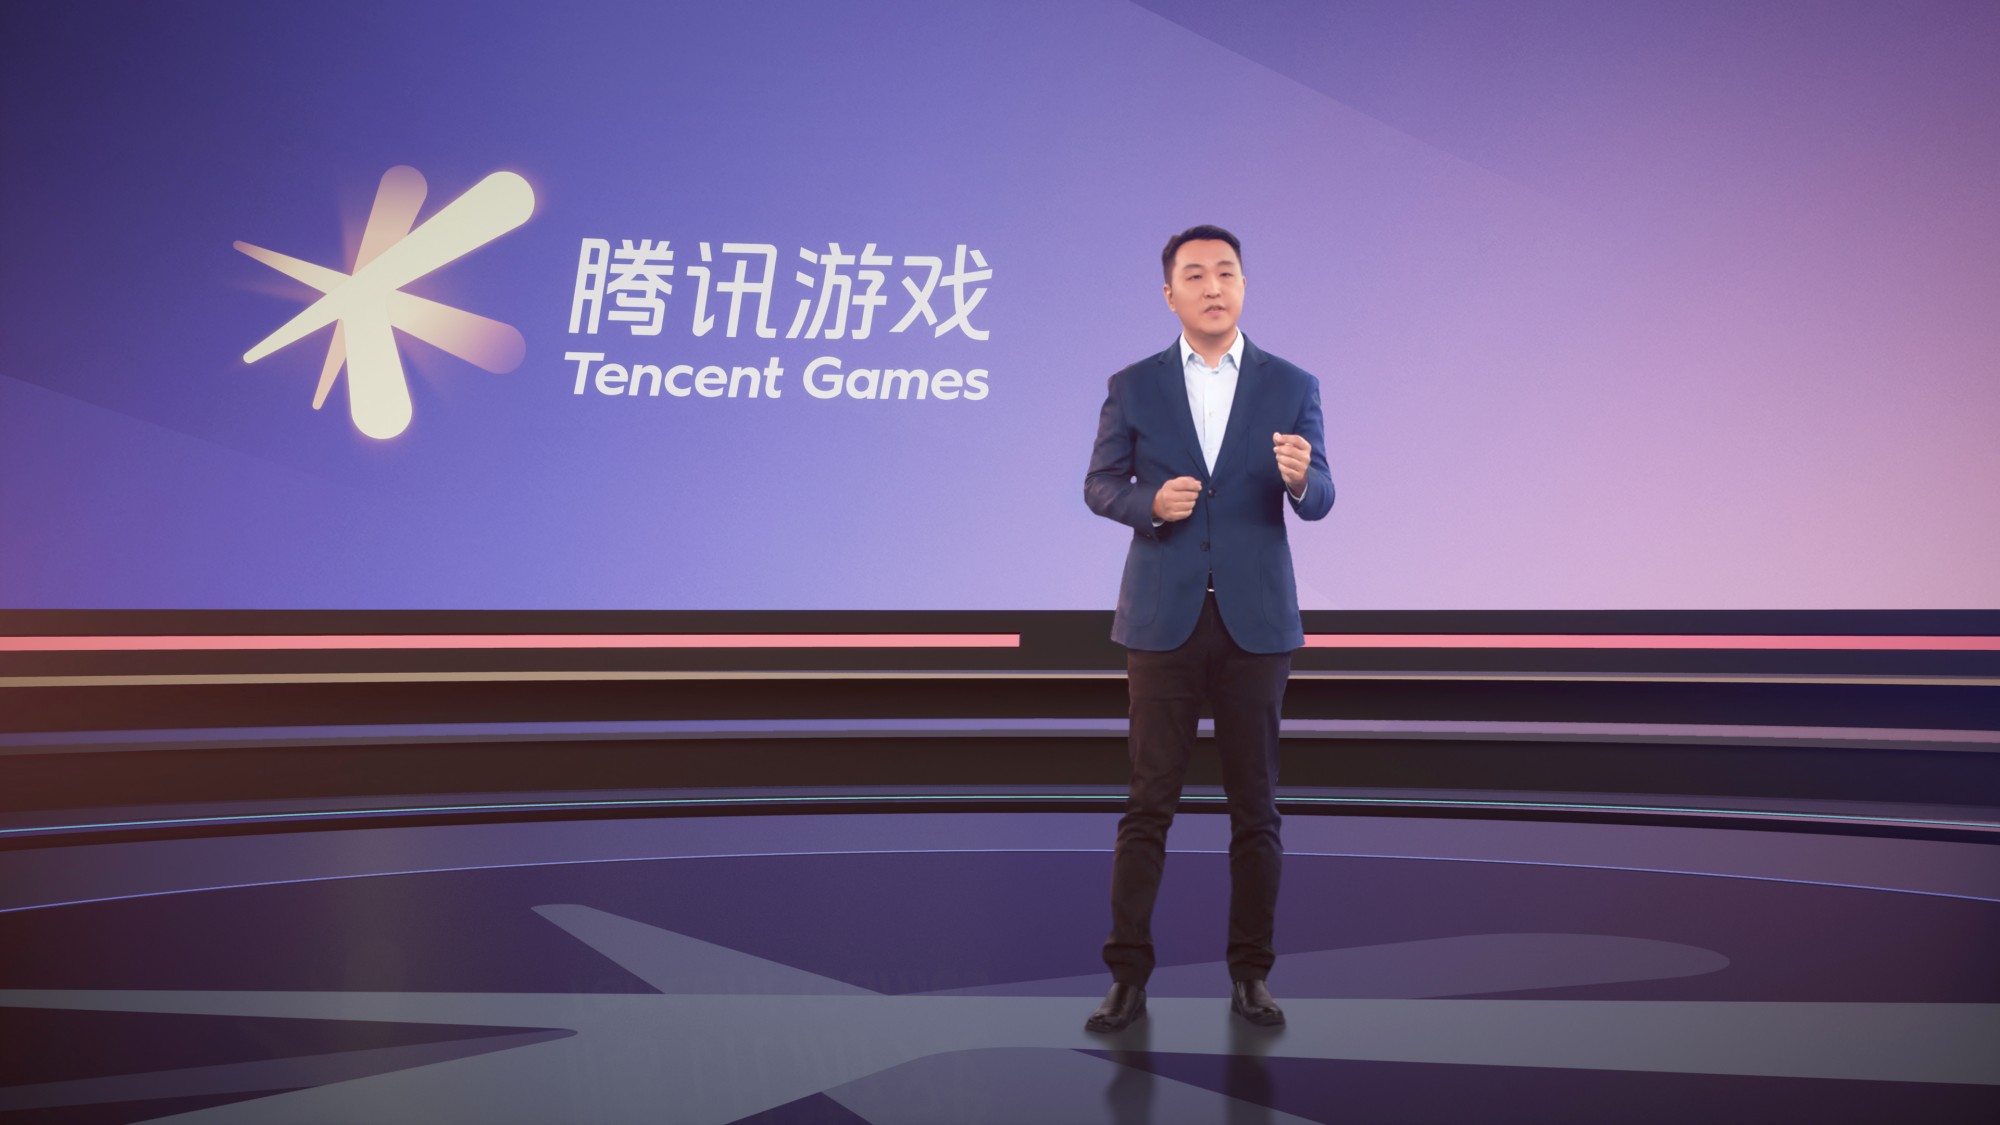 Le géant chinois Tencent continue d